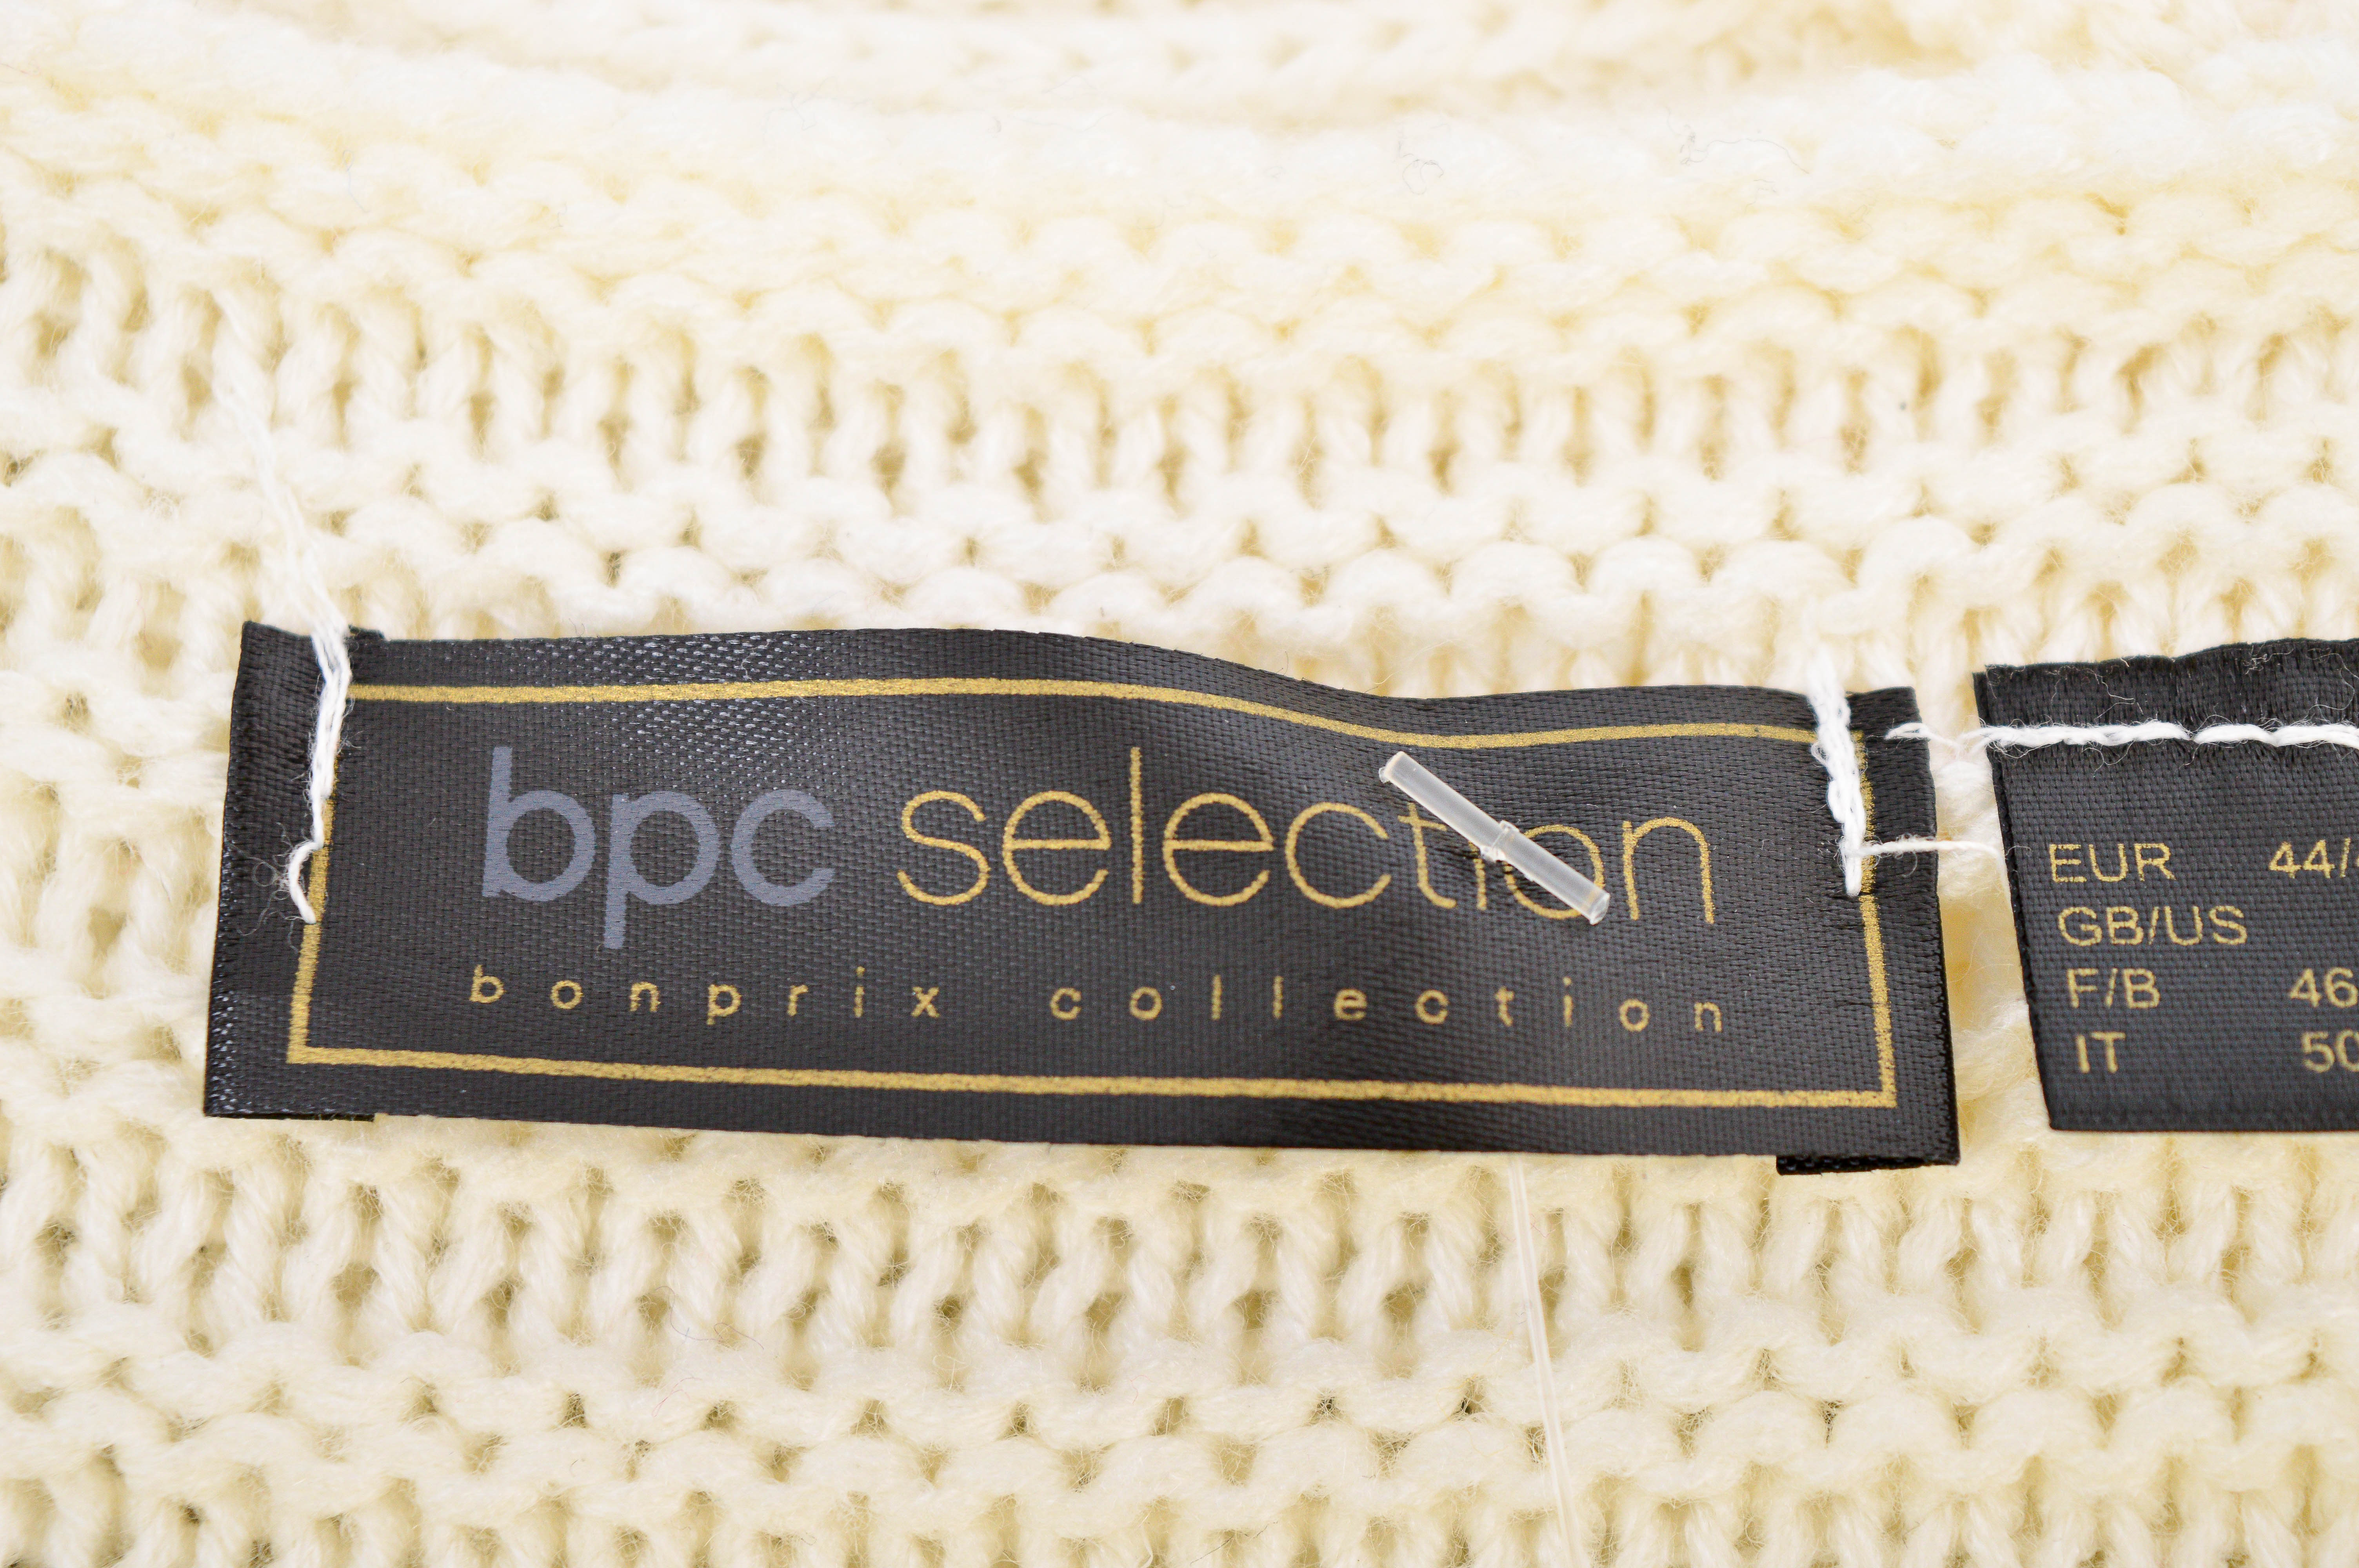 Γυναικεία ζακέτα - Bpc selection bonprix collection - 2